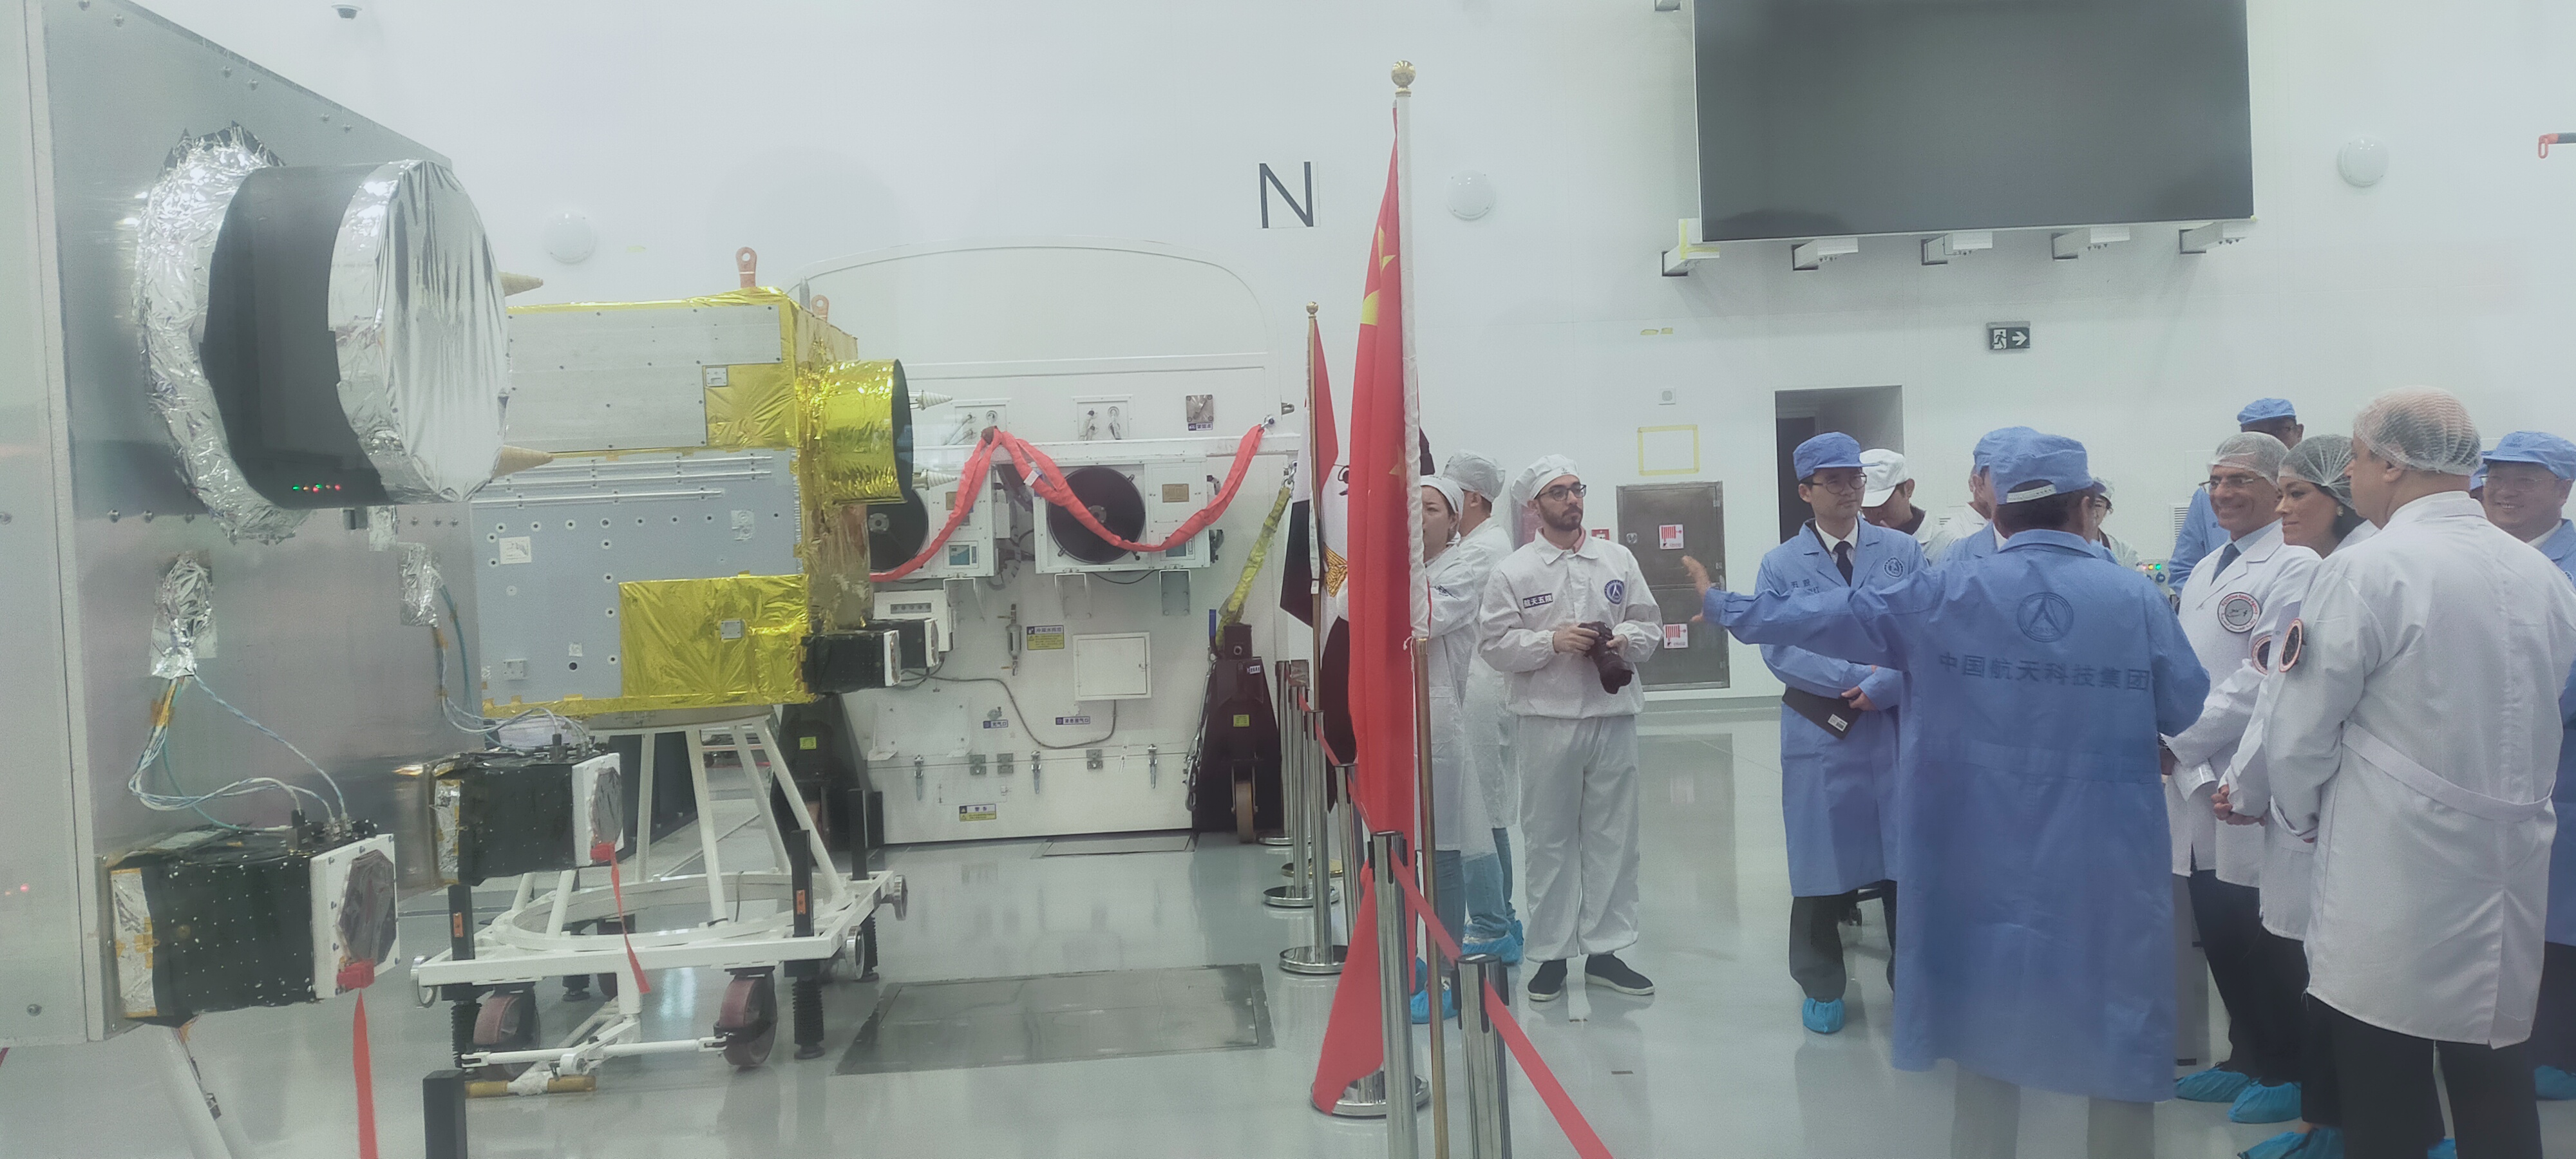 وكالة الفضاء تتسلم النموذج الكهربائى والميكانيكى للقمر الصناعى مصر سات 2 من الصين  (3)